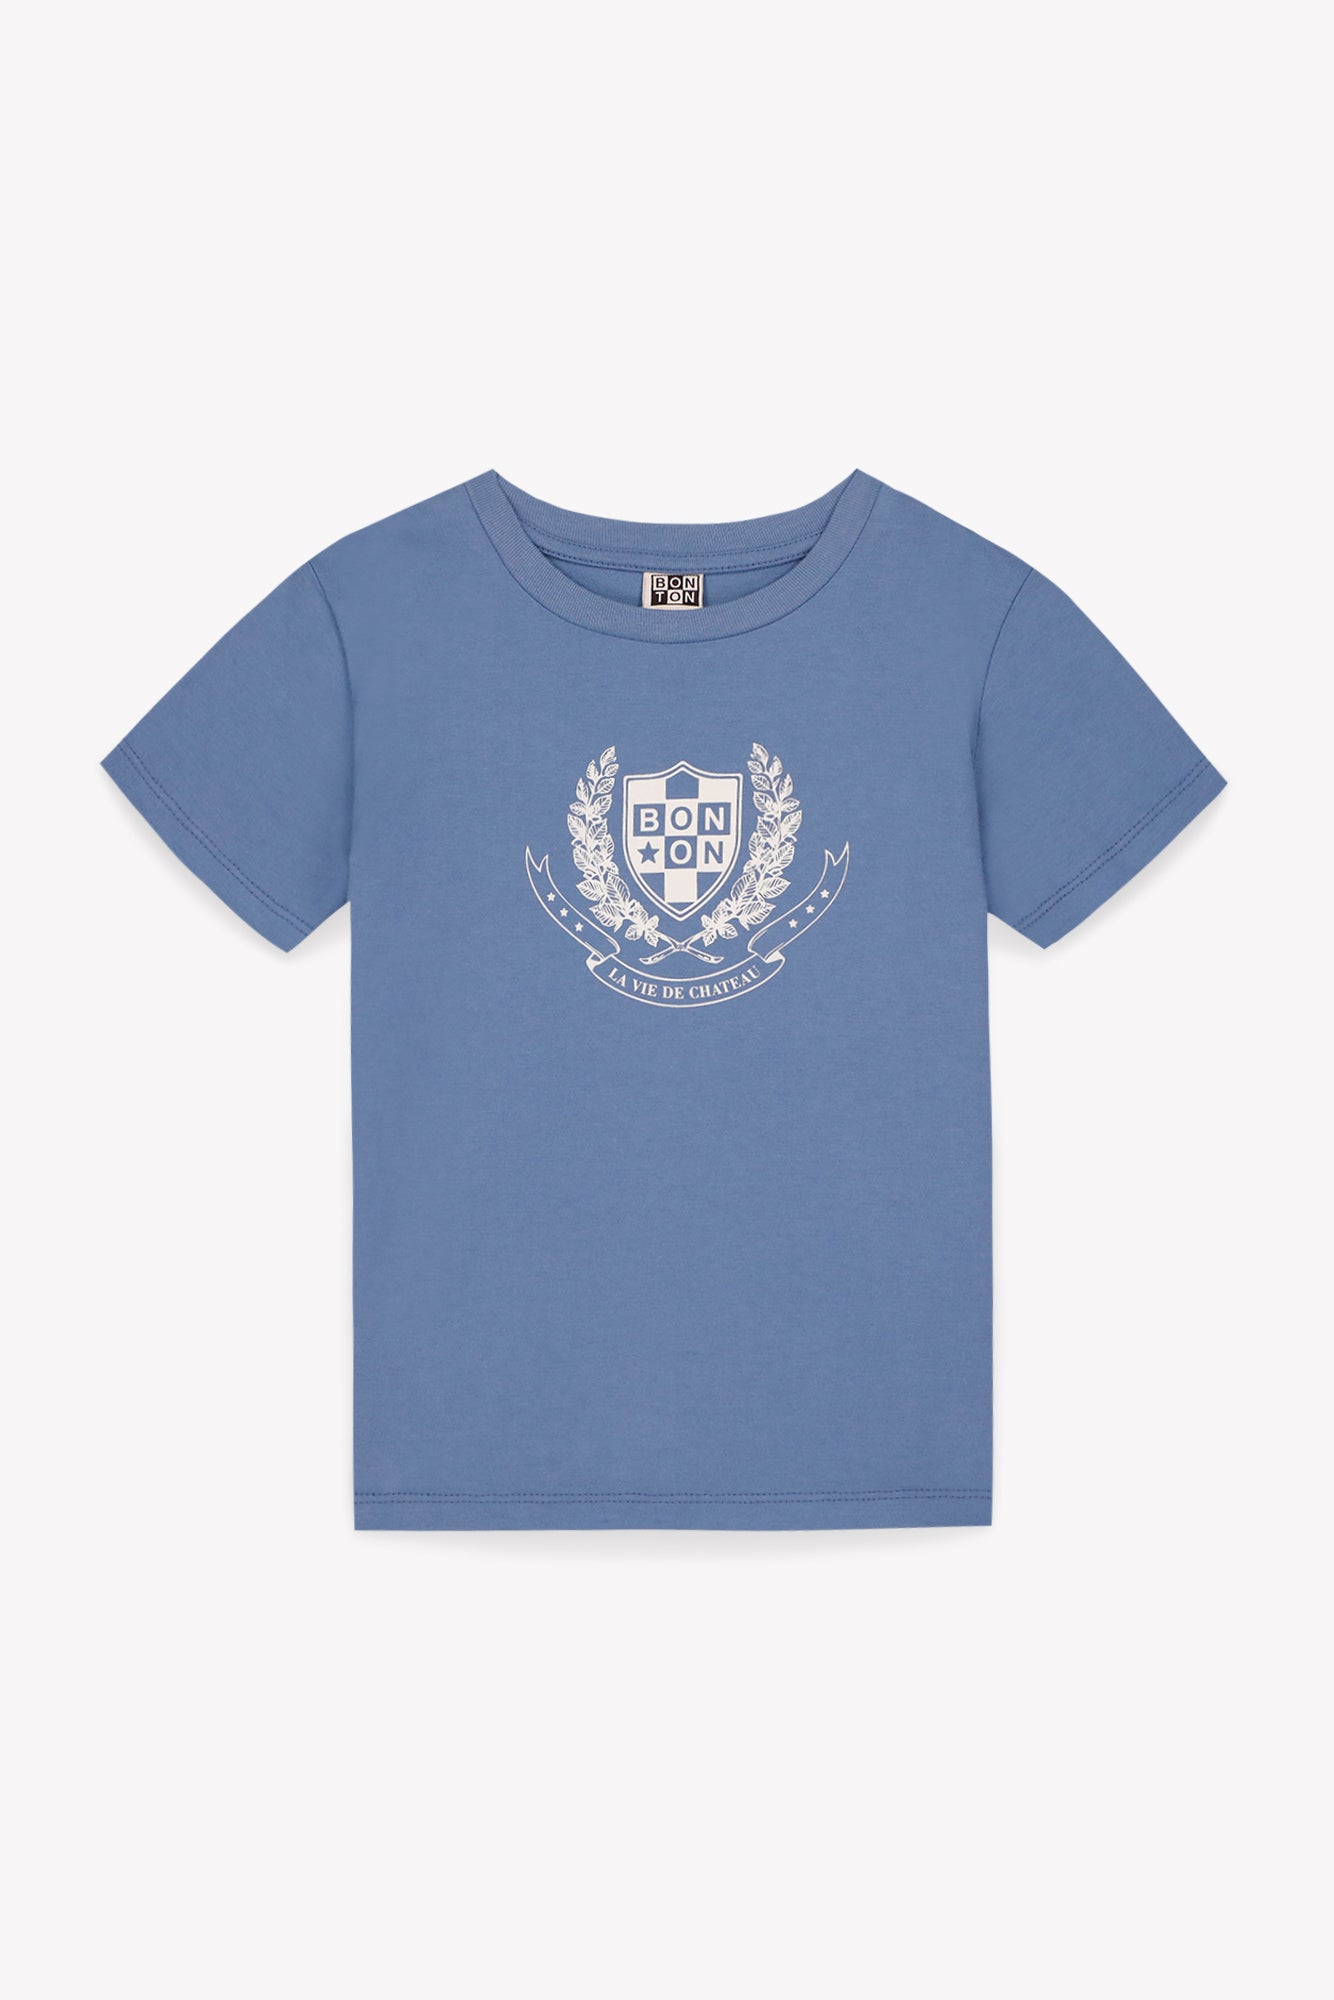 Tee-shirt - Tuba bleu Bébé coton organique imprimé